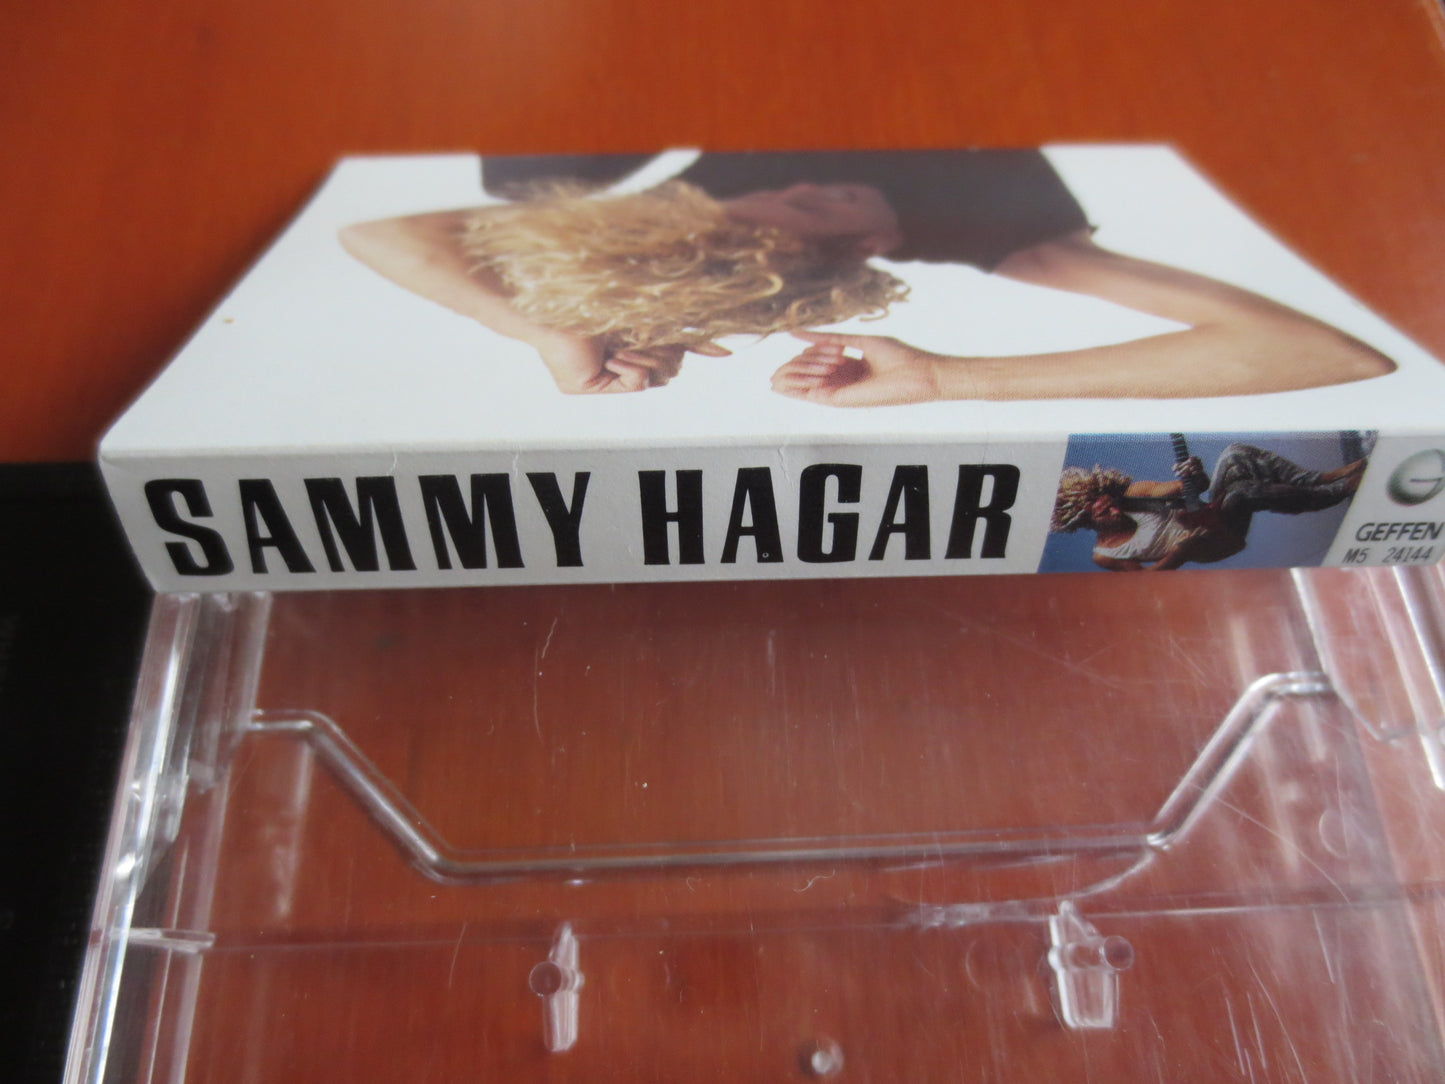 SAMMY HAGAR Tape, SAMMY Hagar Album, Sammy Hagar Music, Sammy Hagar Song, Tape Cassette, Rock Cassette, 1987 Cassette